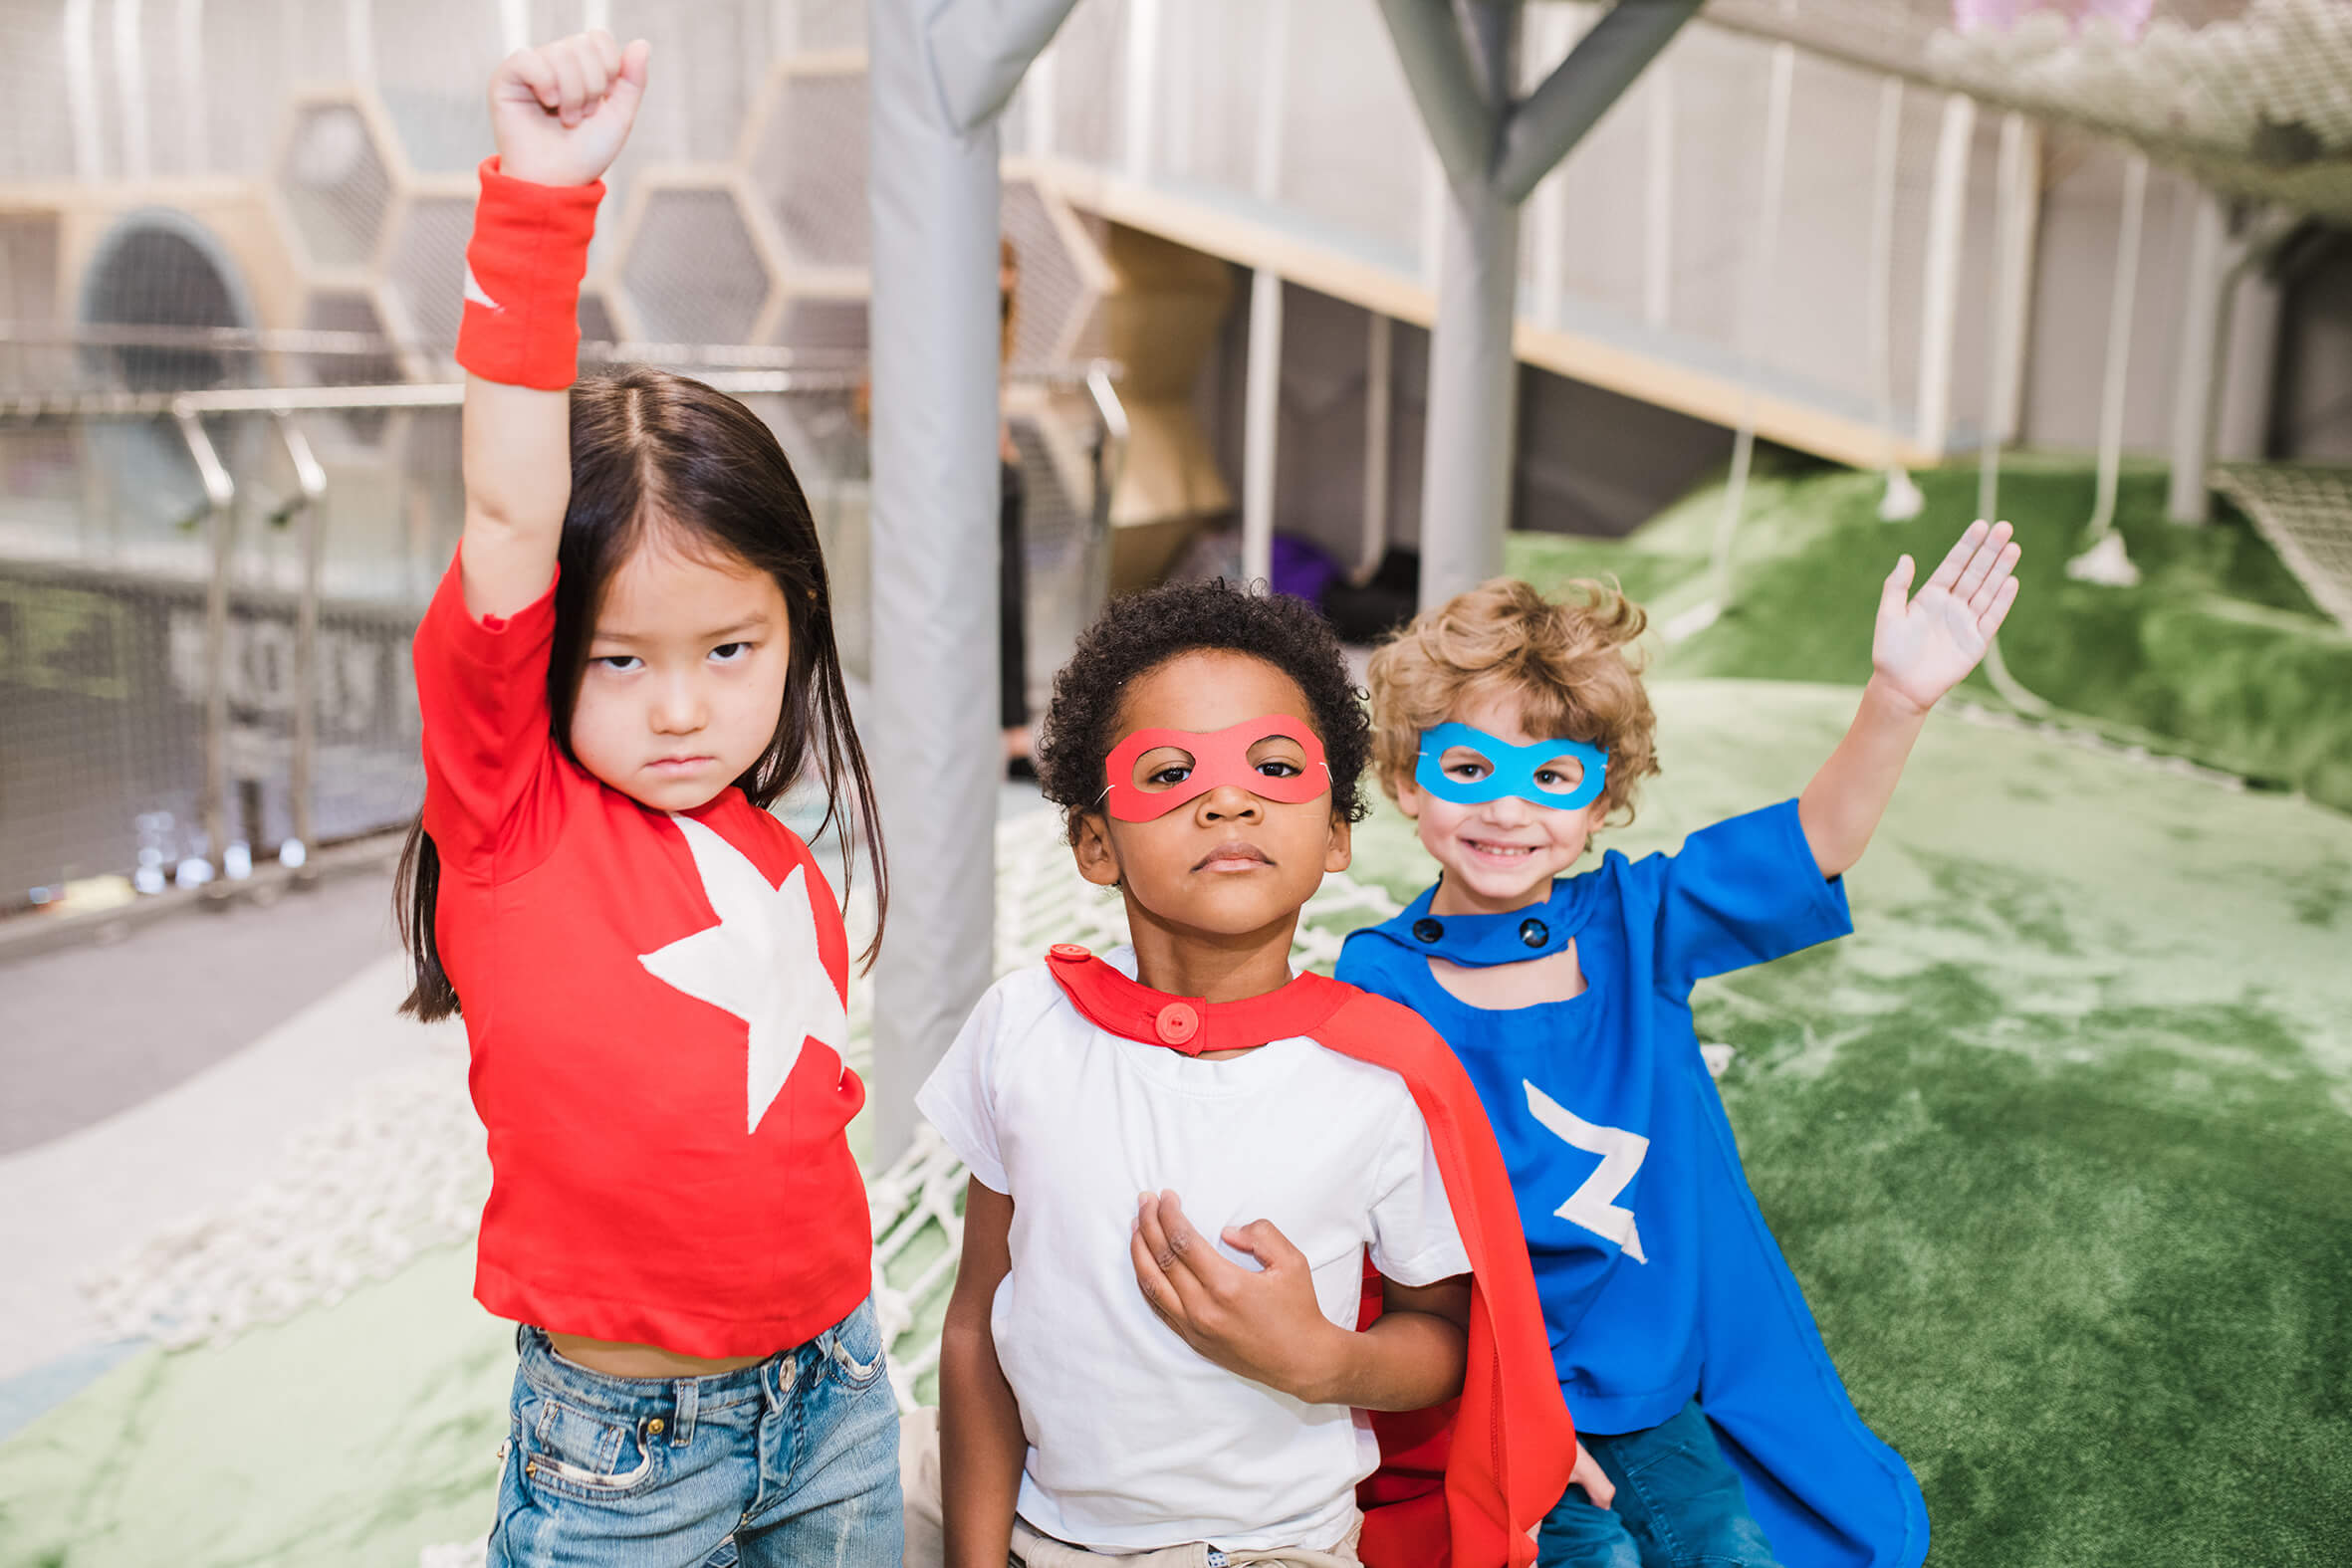 Ein Mädchen, zwei Jungs mit Superhelden Kostüm in blau und rot. Die Jungs haben Masken auf und das Mädchen macht die Superhelden Pose.